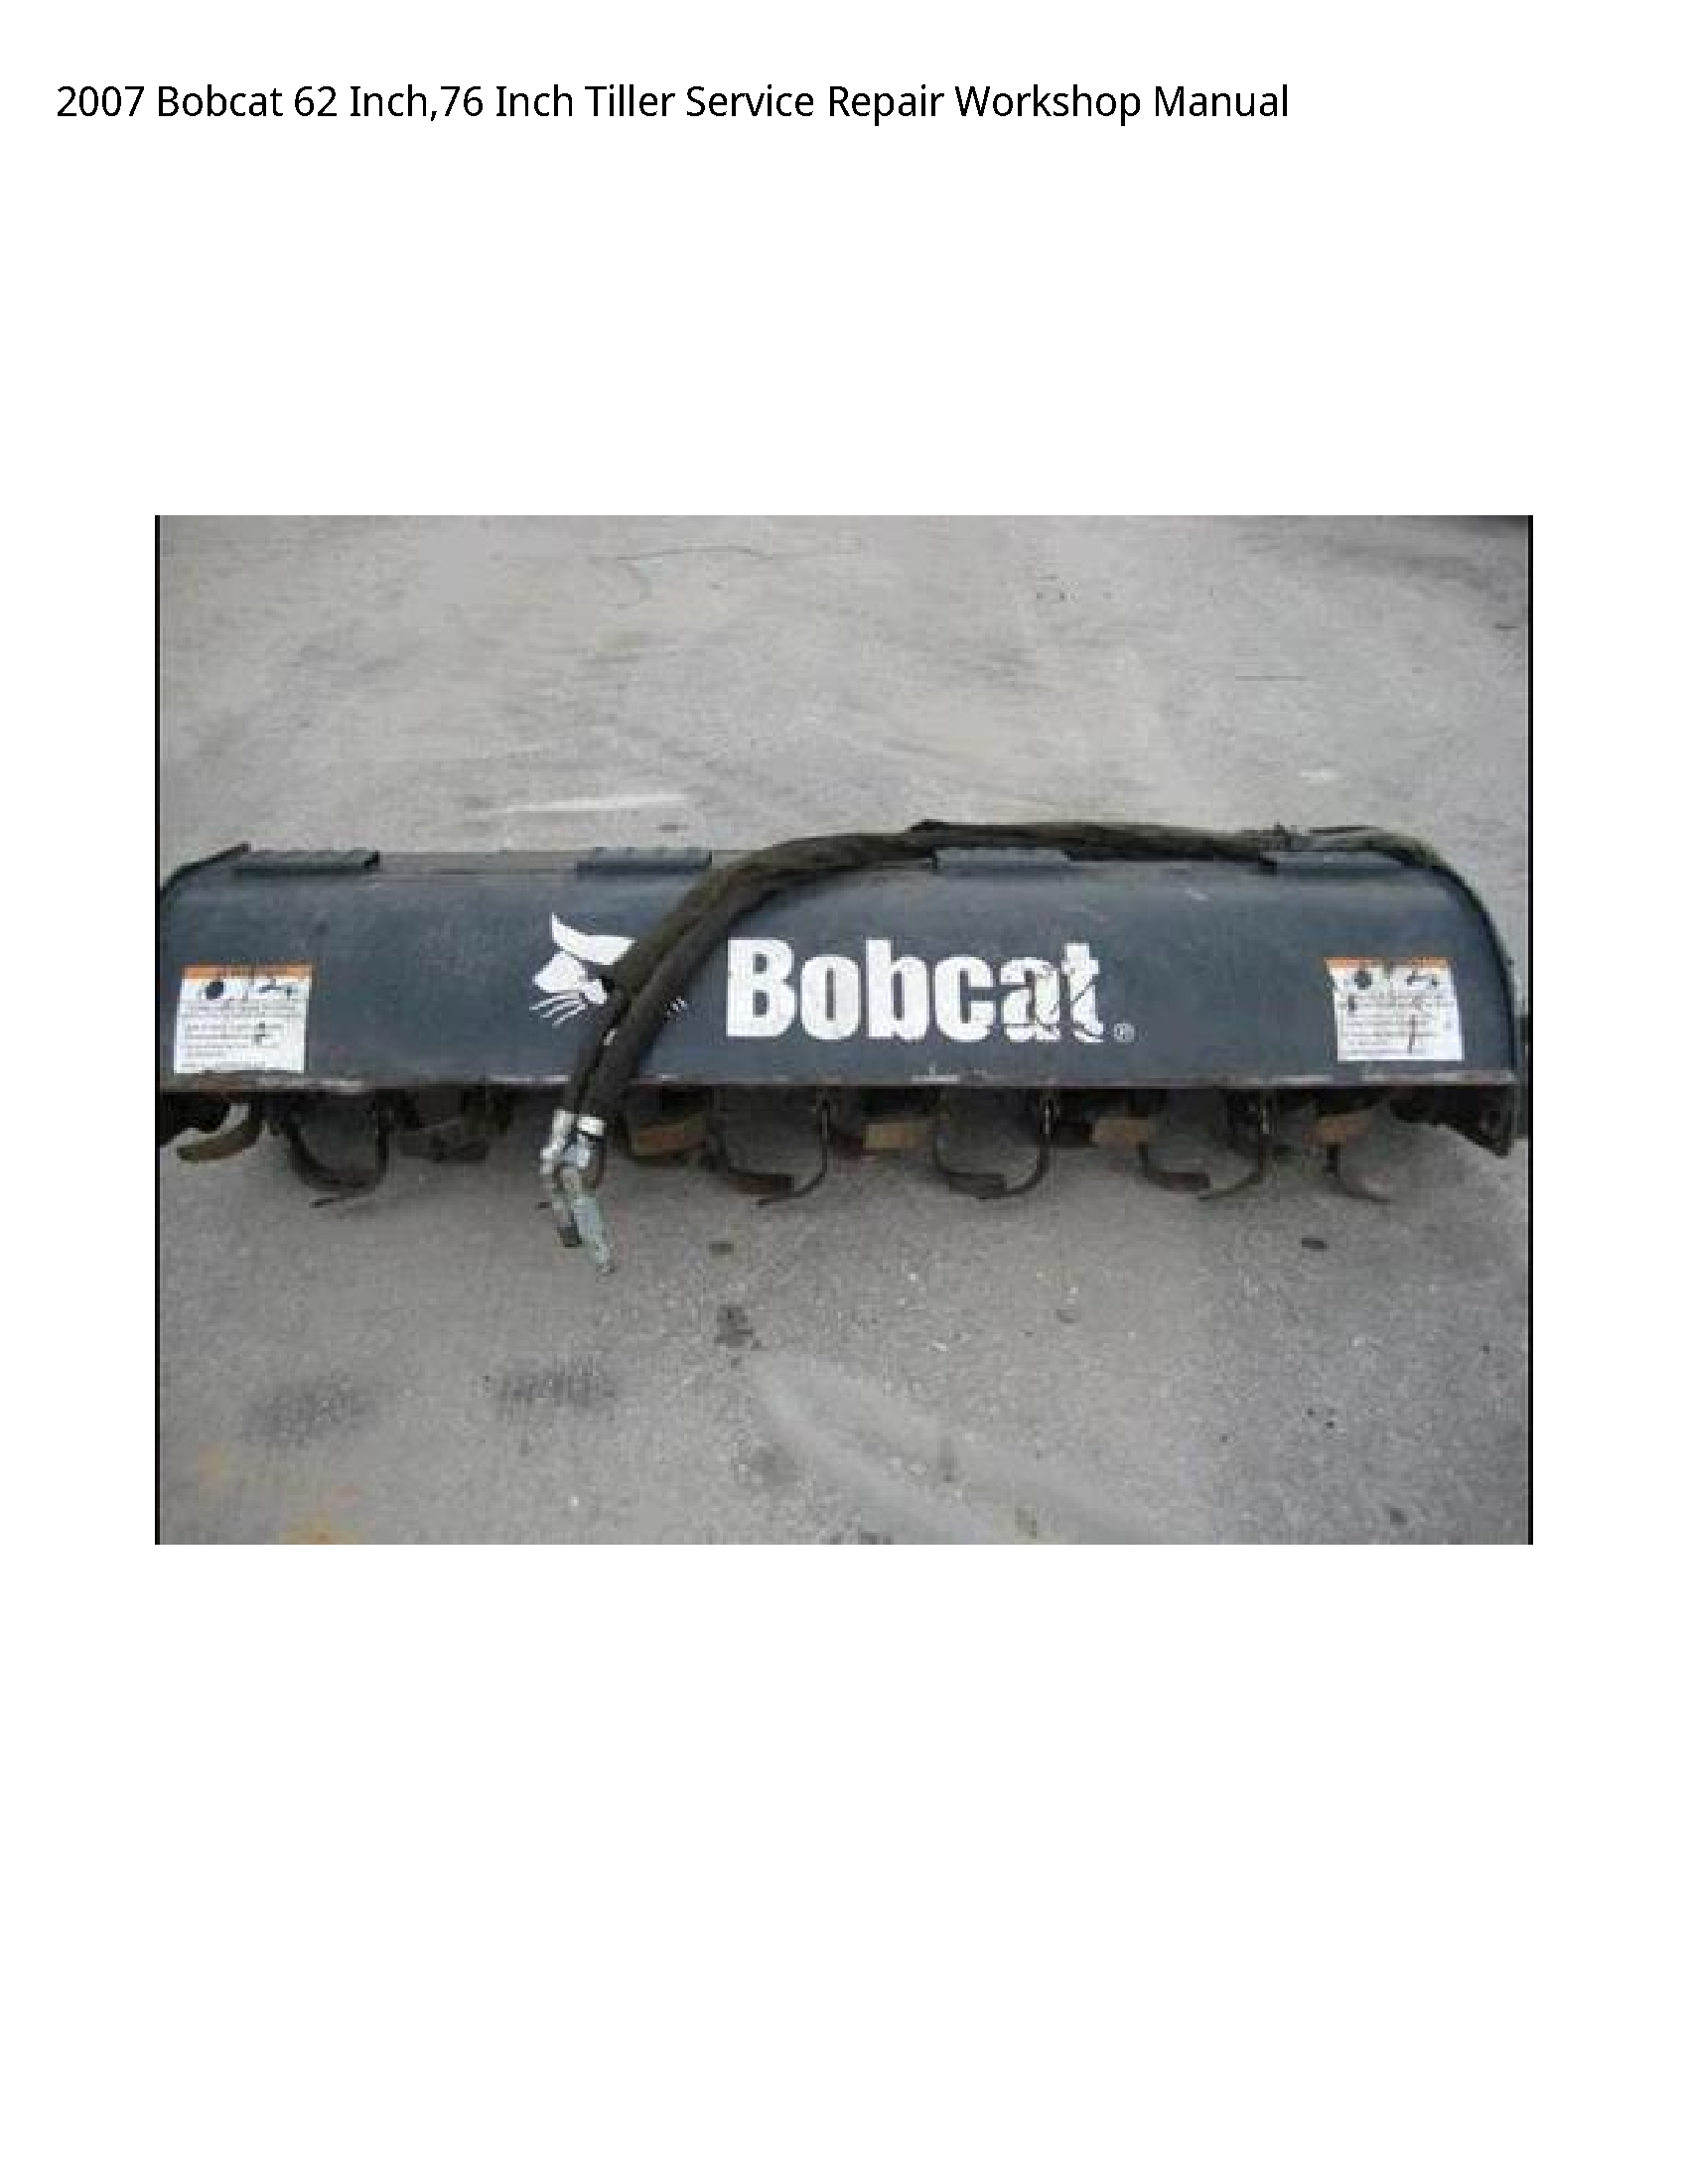 Bobcat 62 Inch Tiller manual